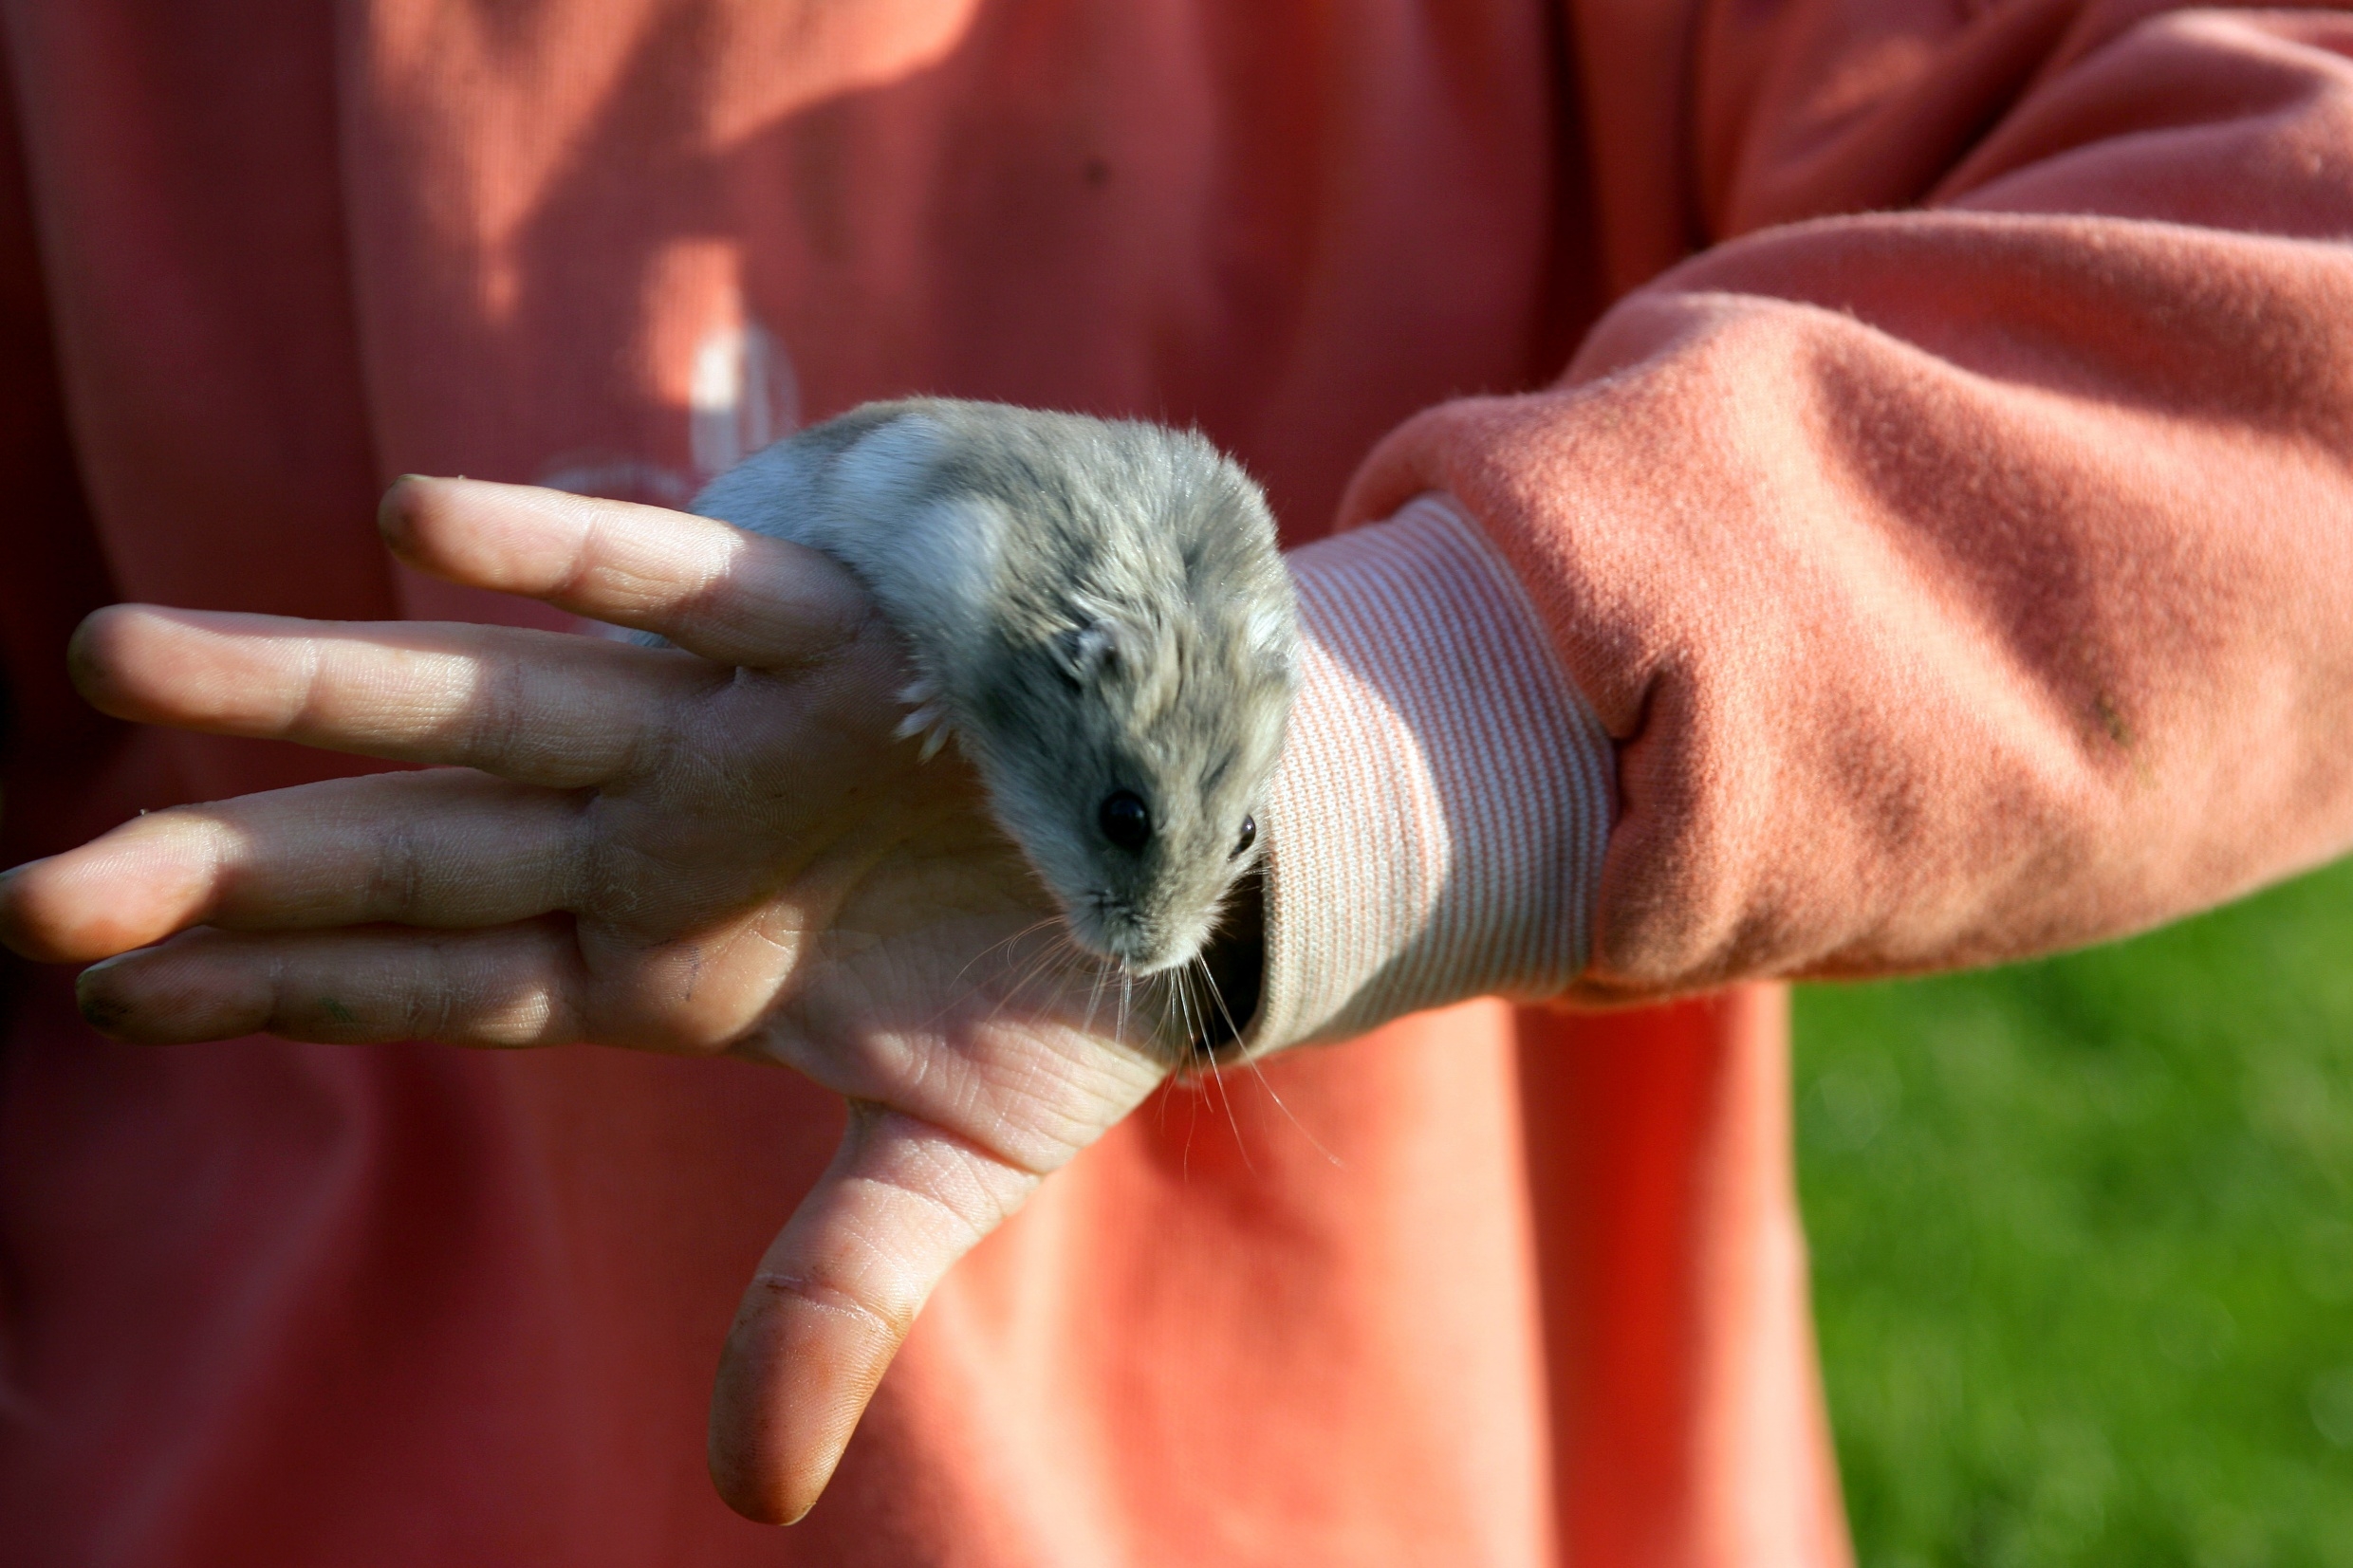 La gale animale peut être transmise à l’Homme par le cobaye ou encore le hamster. © Phovoir